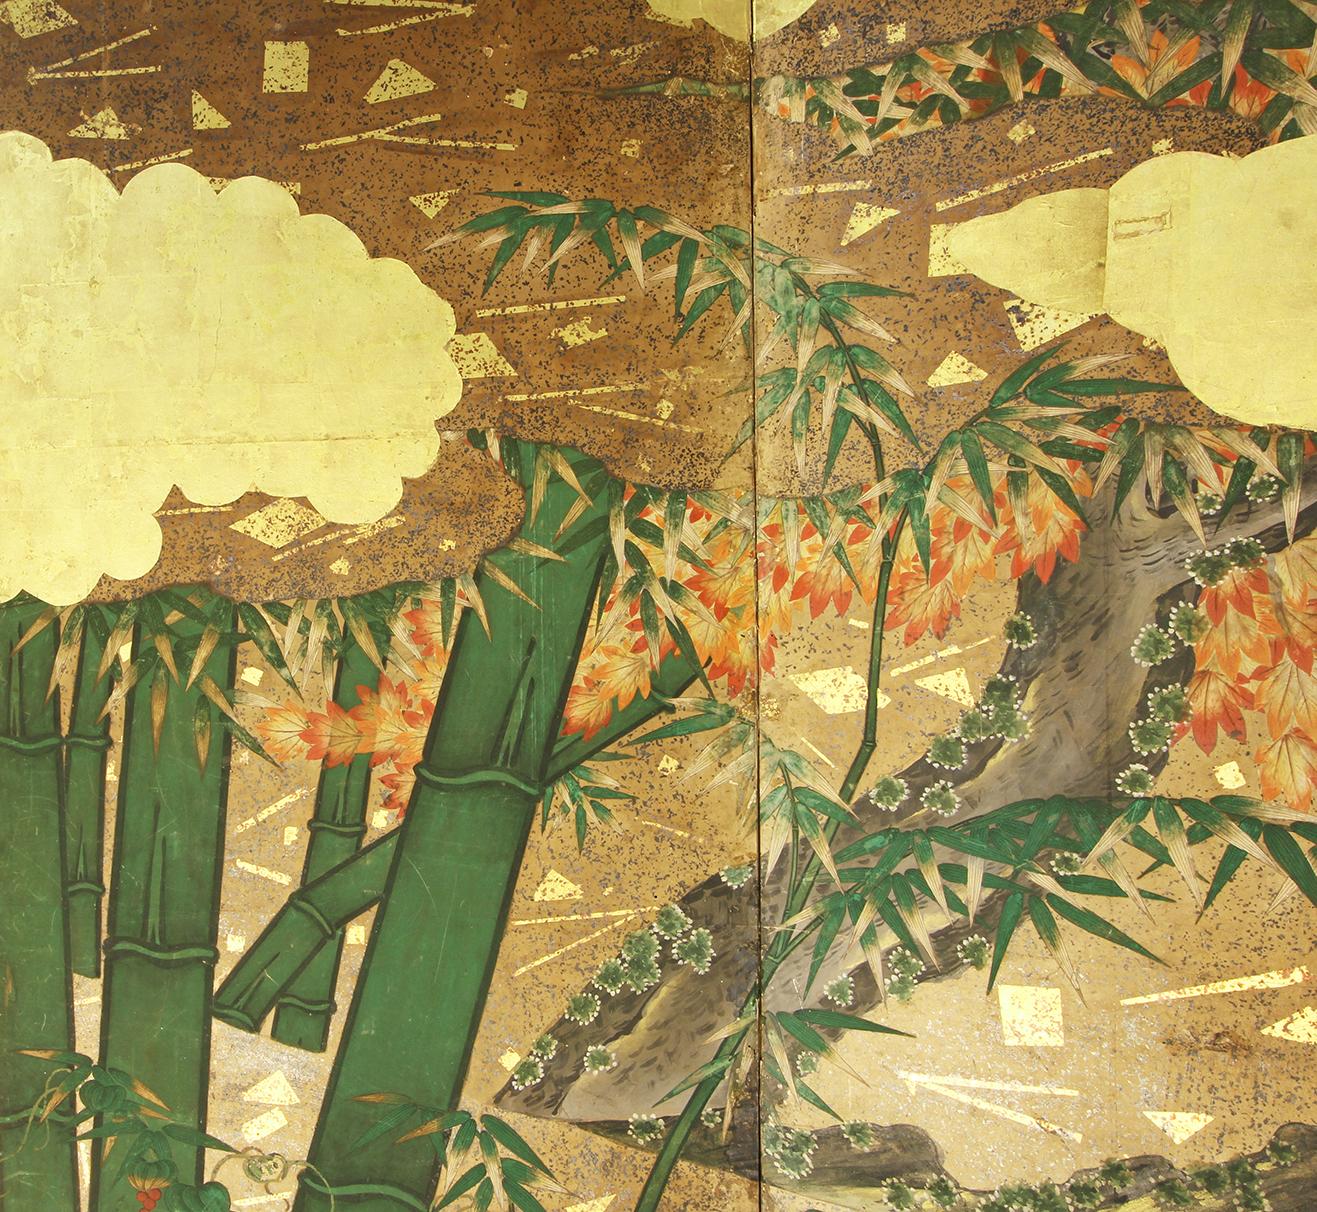 Landschaft mit Blumen und Bambus von einem Maler der Rinpa-Schule aus dem 18. Jahrhundert, zwei Tafeln, gemalt mit Tinte auf Blattgold und Pflanzenpapier.
Die Blumen werden mit großer Sorgfalt mit Mineralpigmenten und Tusche gemalt.
Rinpa ist eine